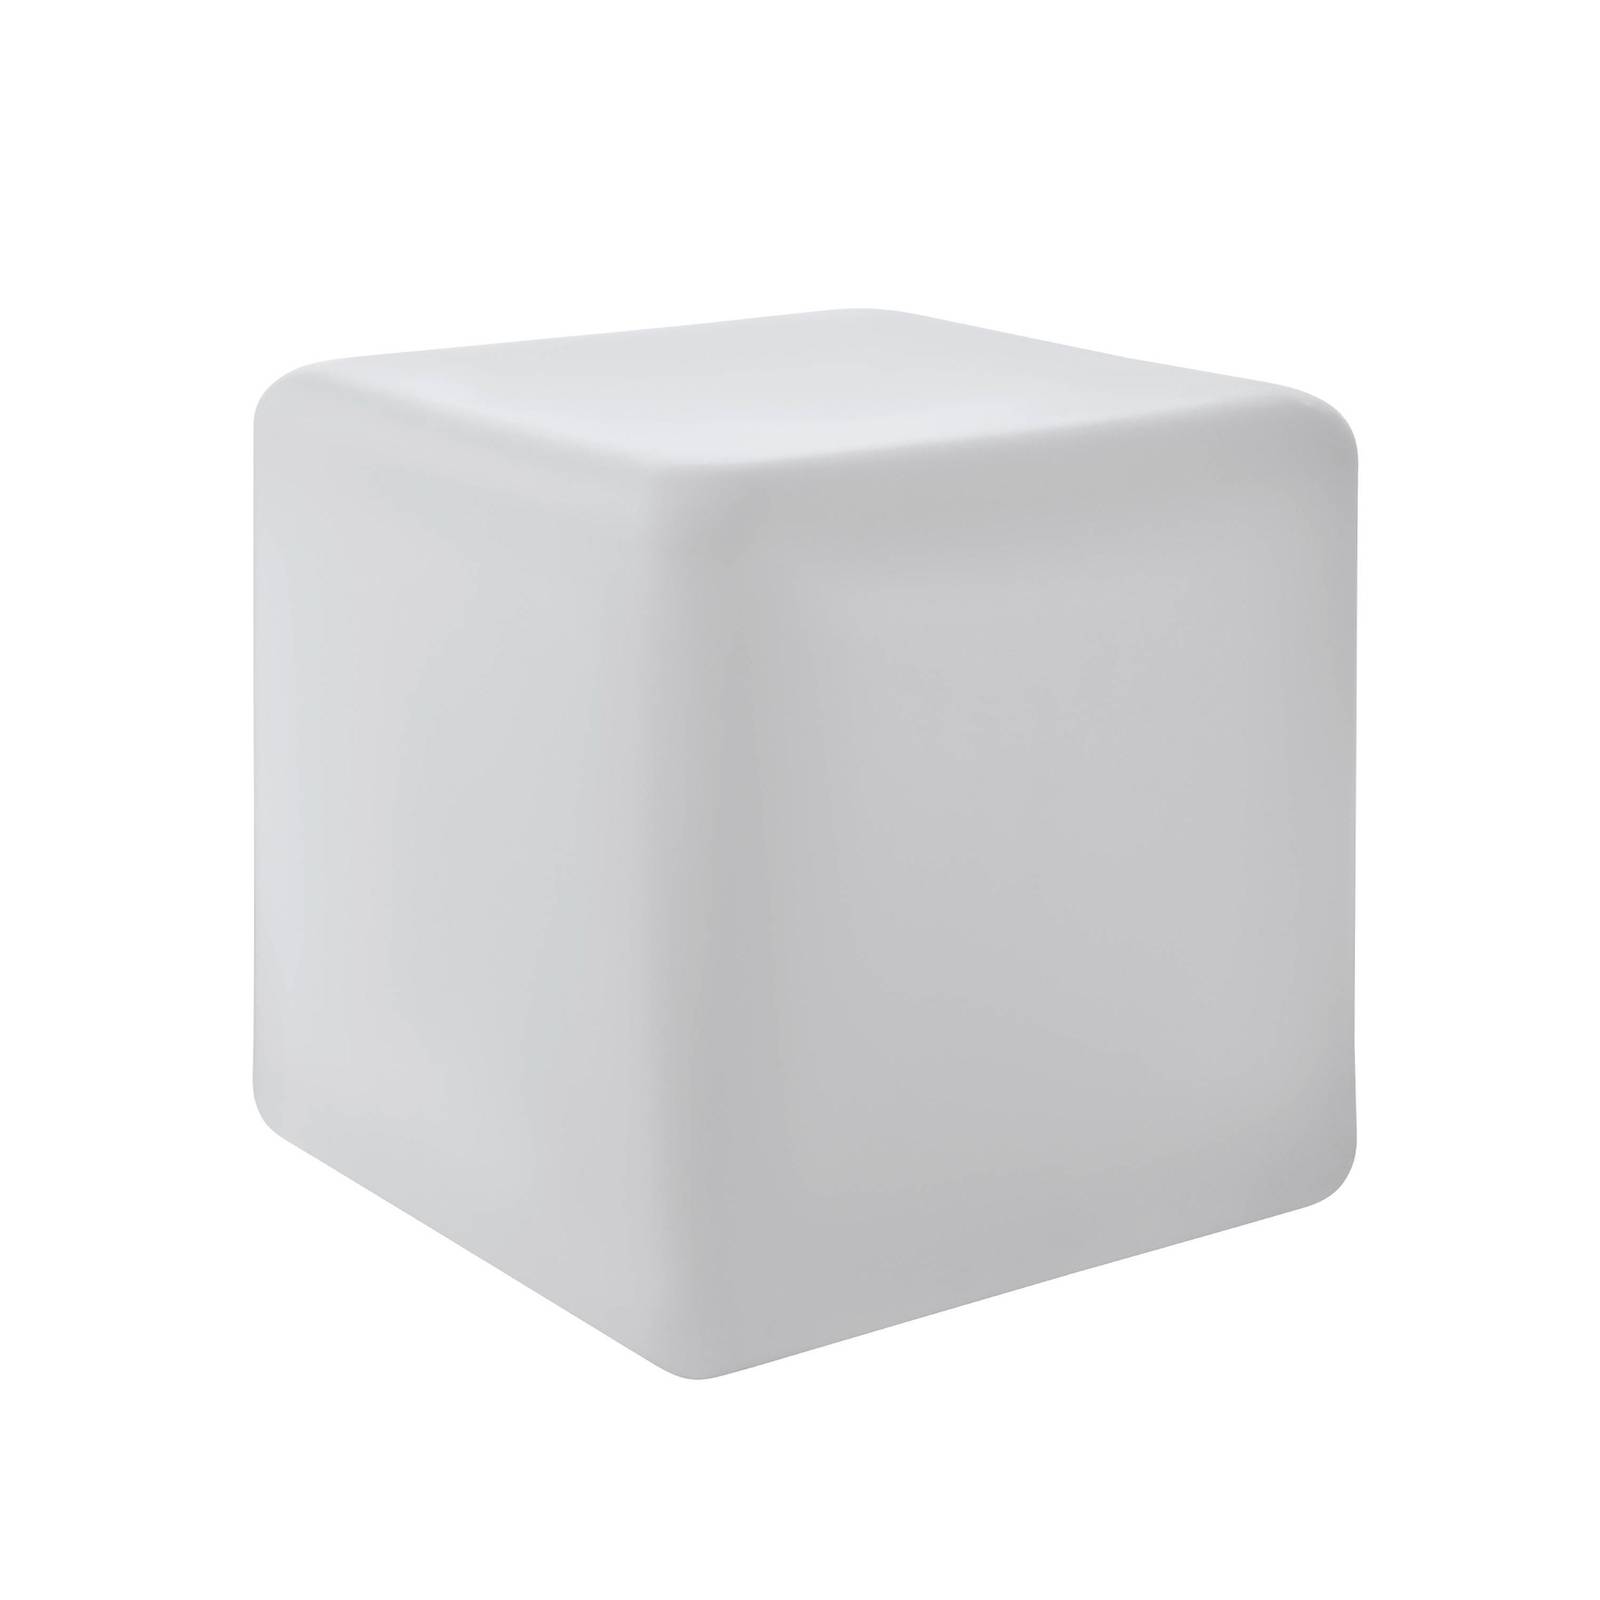 Kültéri világítás Bottona kocka E27 fehér 40x40 cm